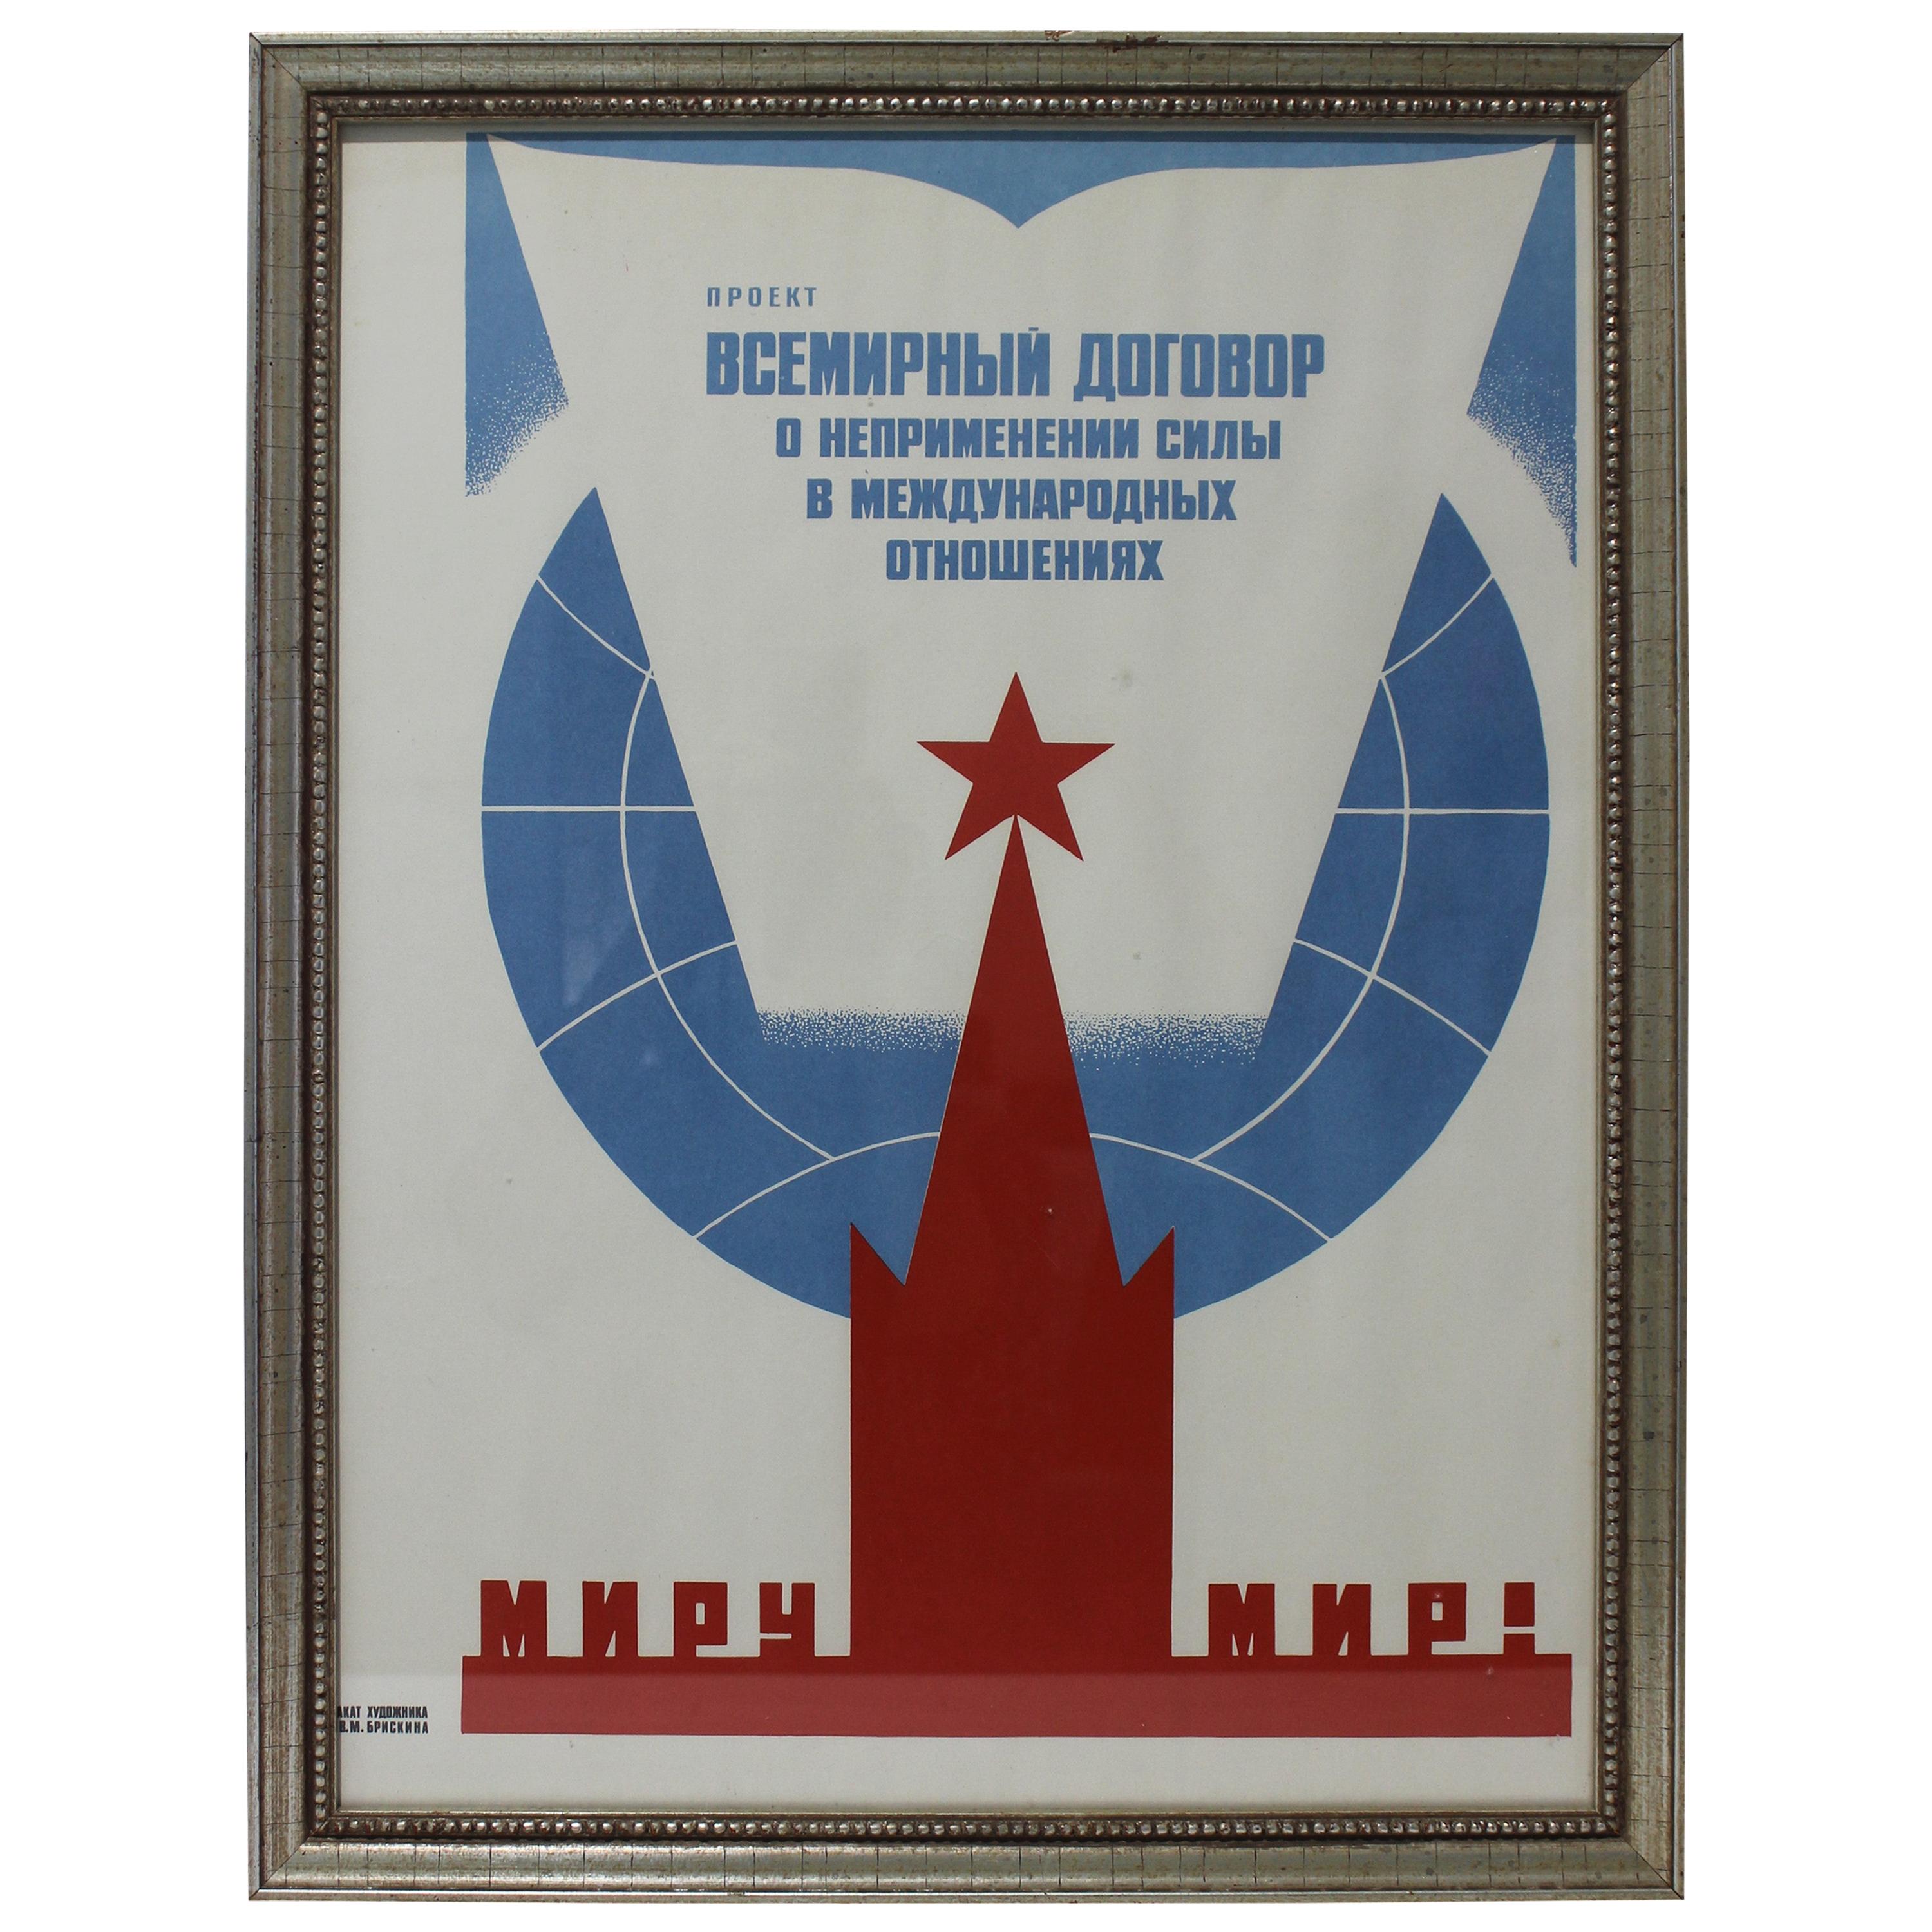 Affiche de l'Union soviétique des années 1970